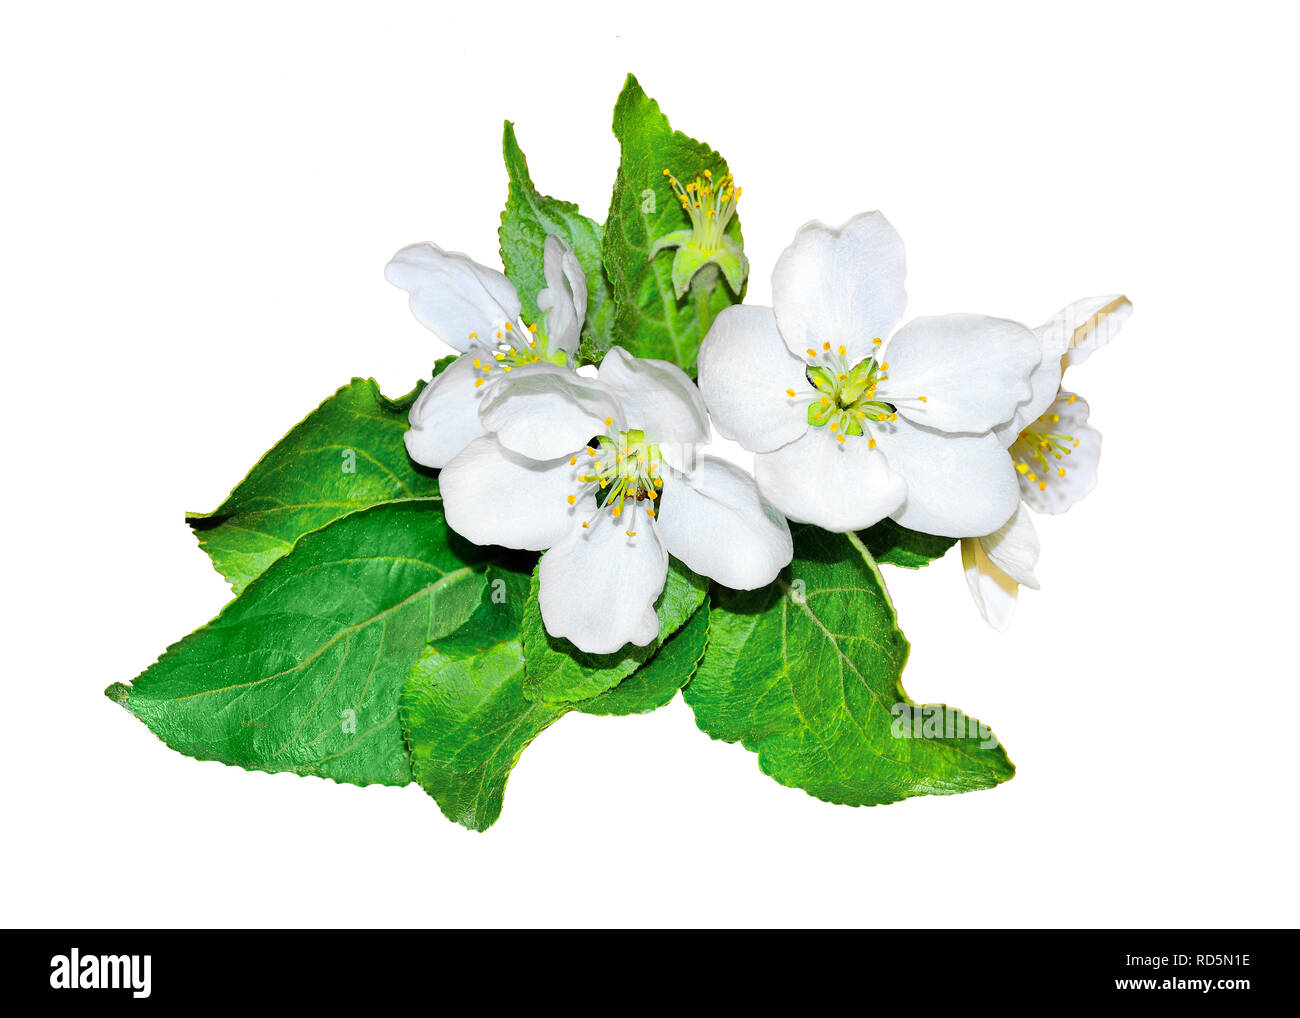 Sanfte blühender Apfelbaum Zweig mit duftende Frische, weiße Blumen und grüne Blätter, auf einem weißen Hintergrund - Element der Feder desi Stockfoto